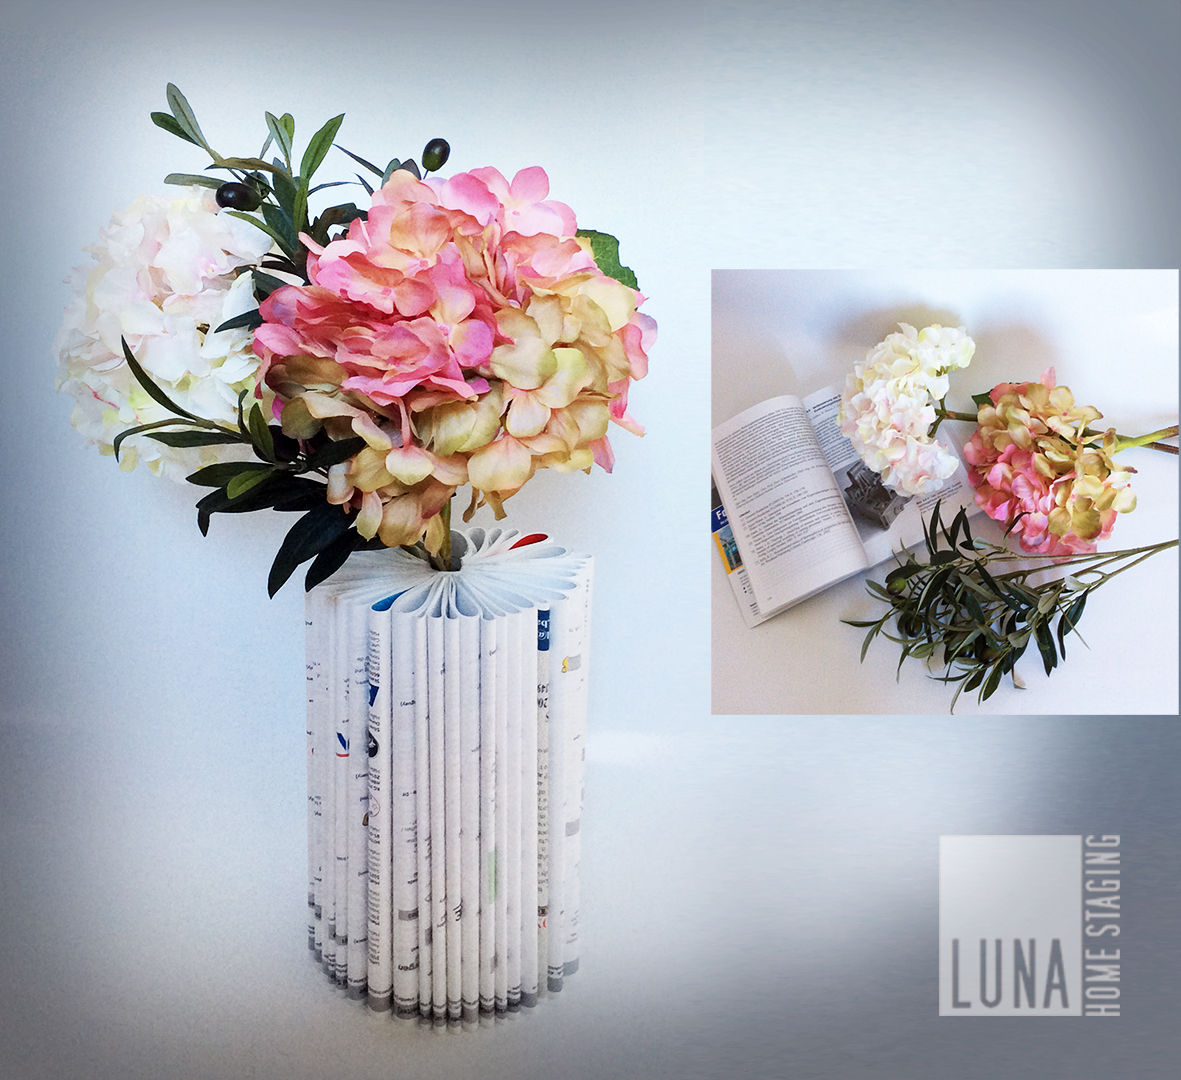 Selber machen - Book Vase, Luna Homestaging Luna Homestaging Casas de estilo moderno